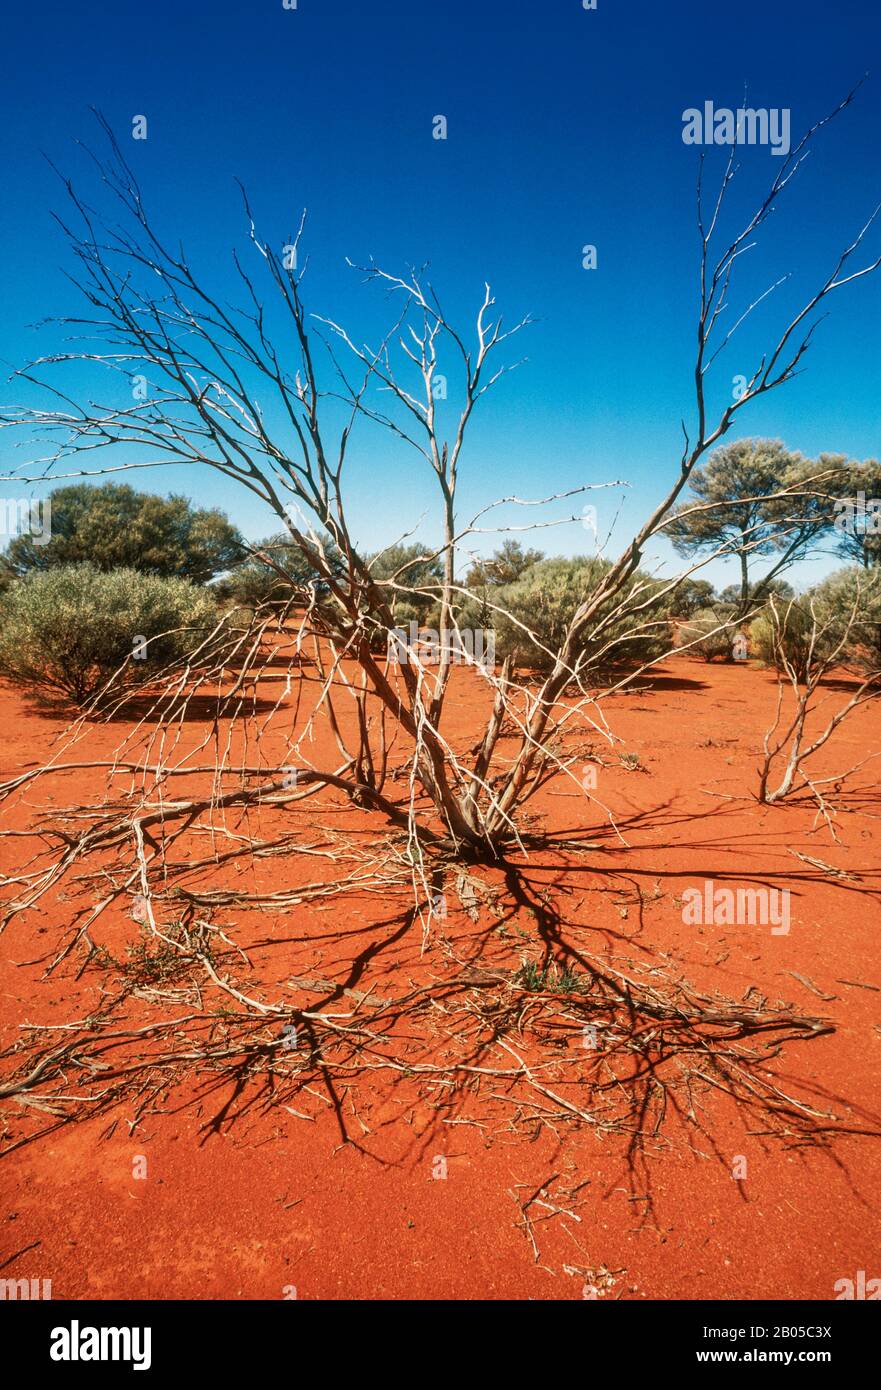 spindly vegetation on red earth, desert, Central Australia Stock Photo